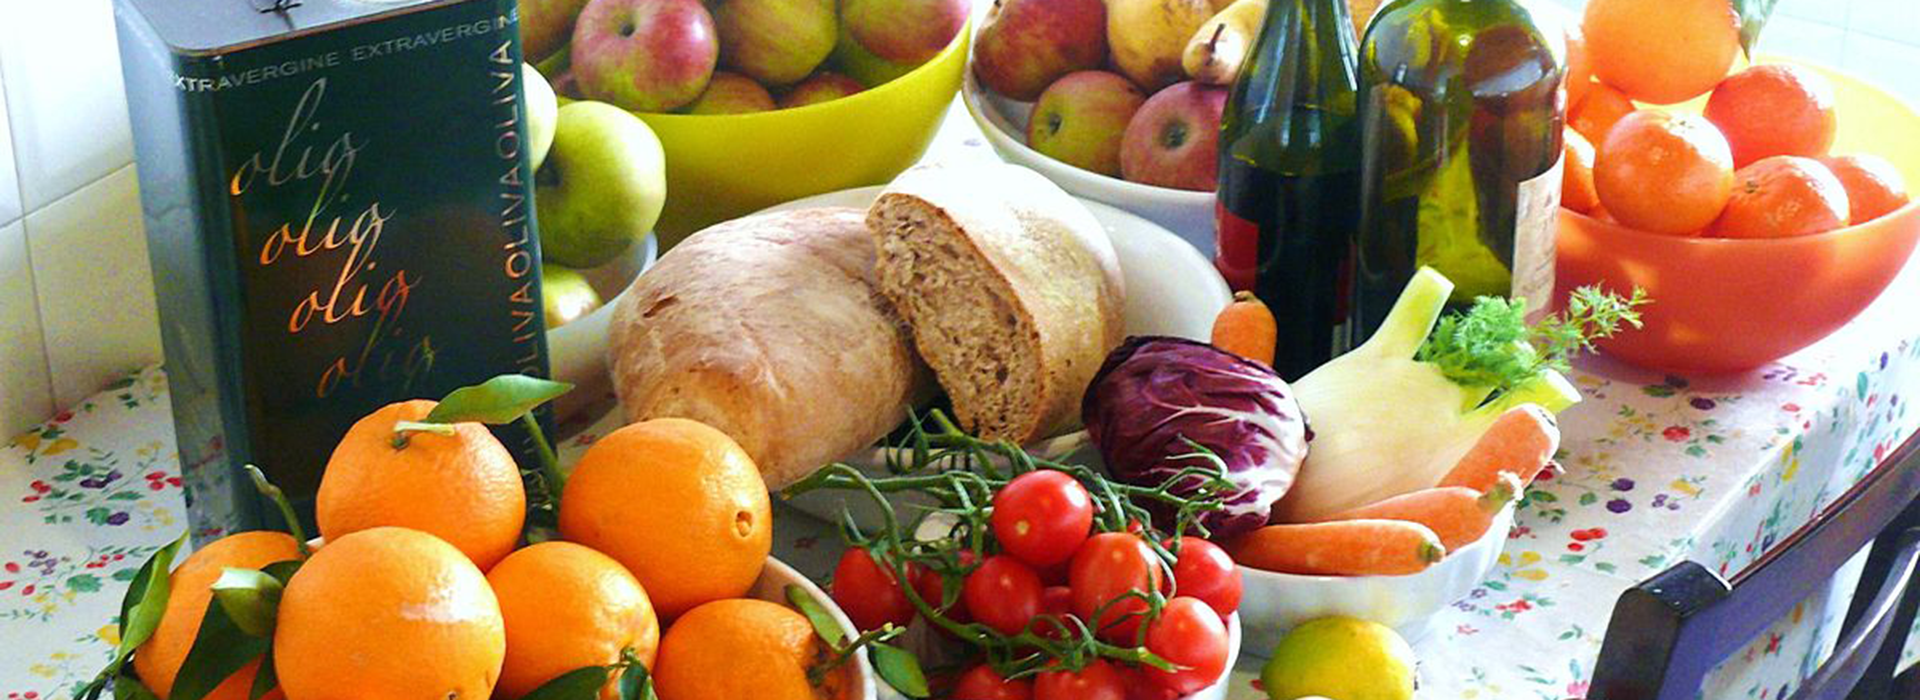 Varietà di cibo che fanno parte della dieta mediterranea, come pane olio d'oliva, mele, arance, pomodorini carote per l'articolo Carboidrati: Buoni compagni di Viaggio? alla scoperta dei carboidrati e della dieta Mediterranea